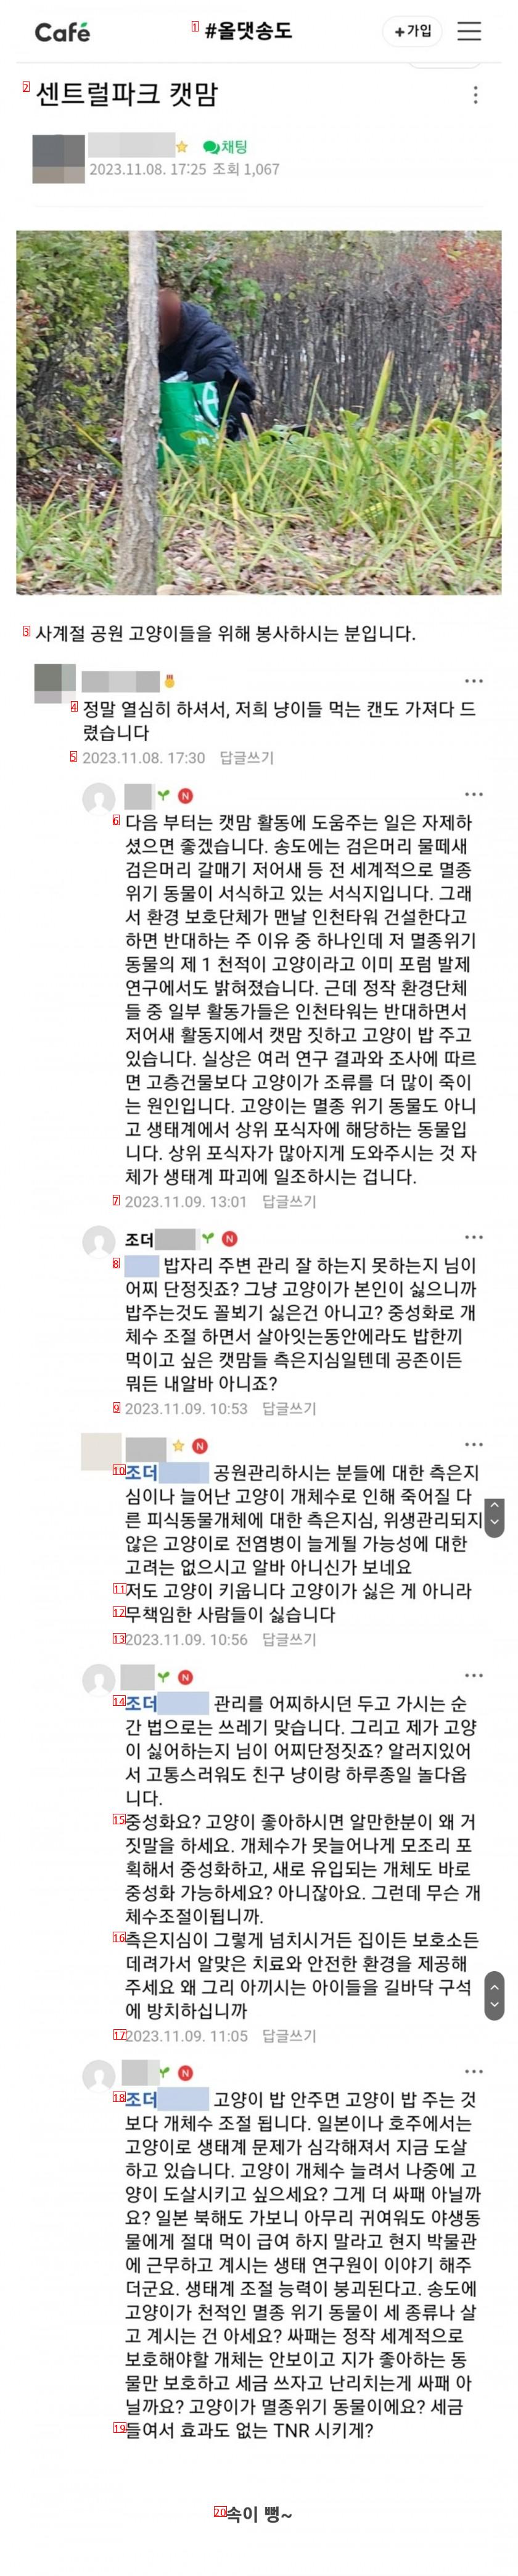 팩트로 캣맘 후드려 패는 송도 주민들